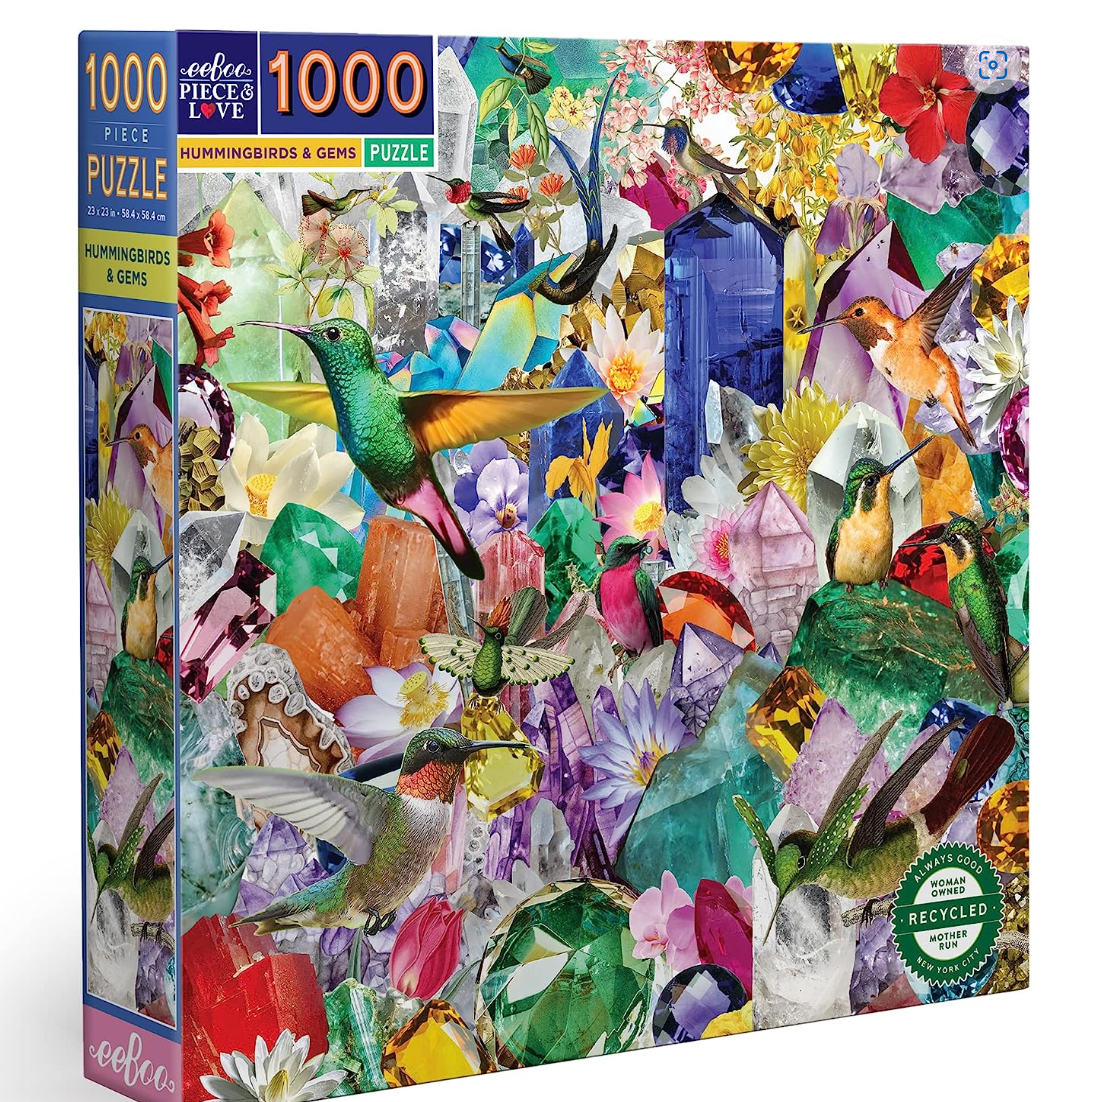 Hummingbird & Gems 1000 Piece Puzzle